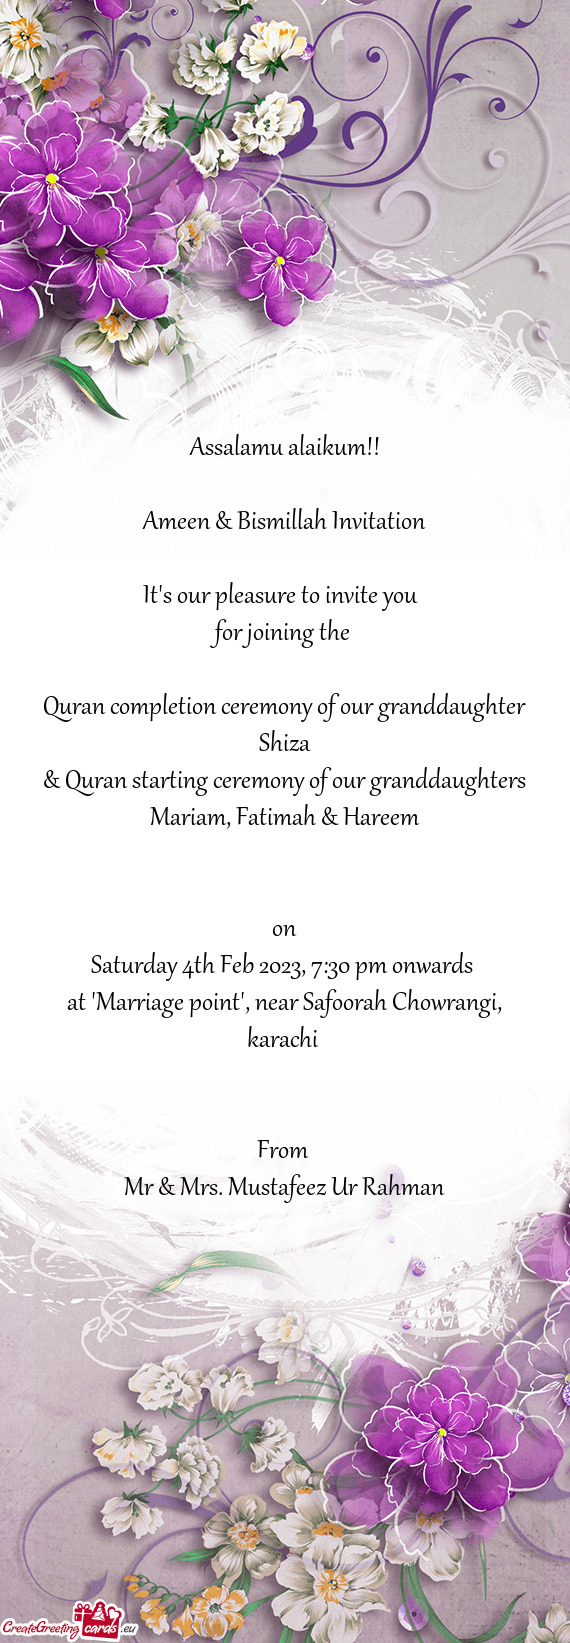 Ameen & Bismillah Invitation